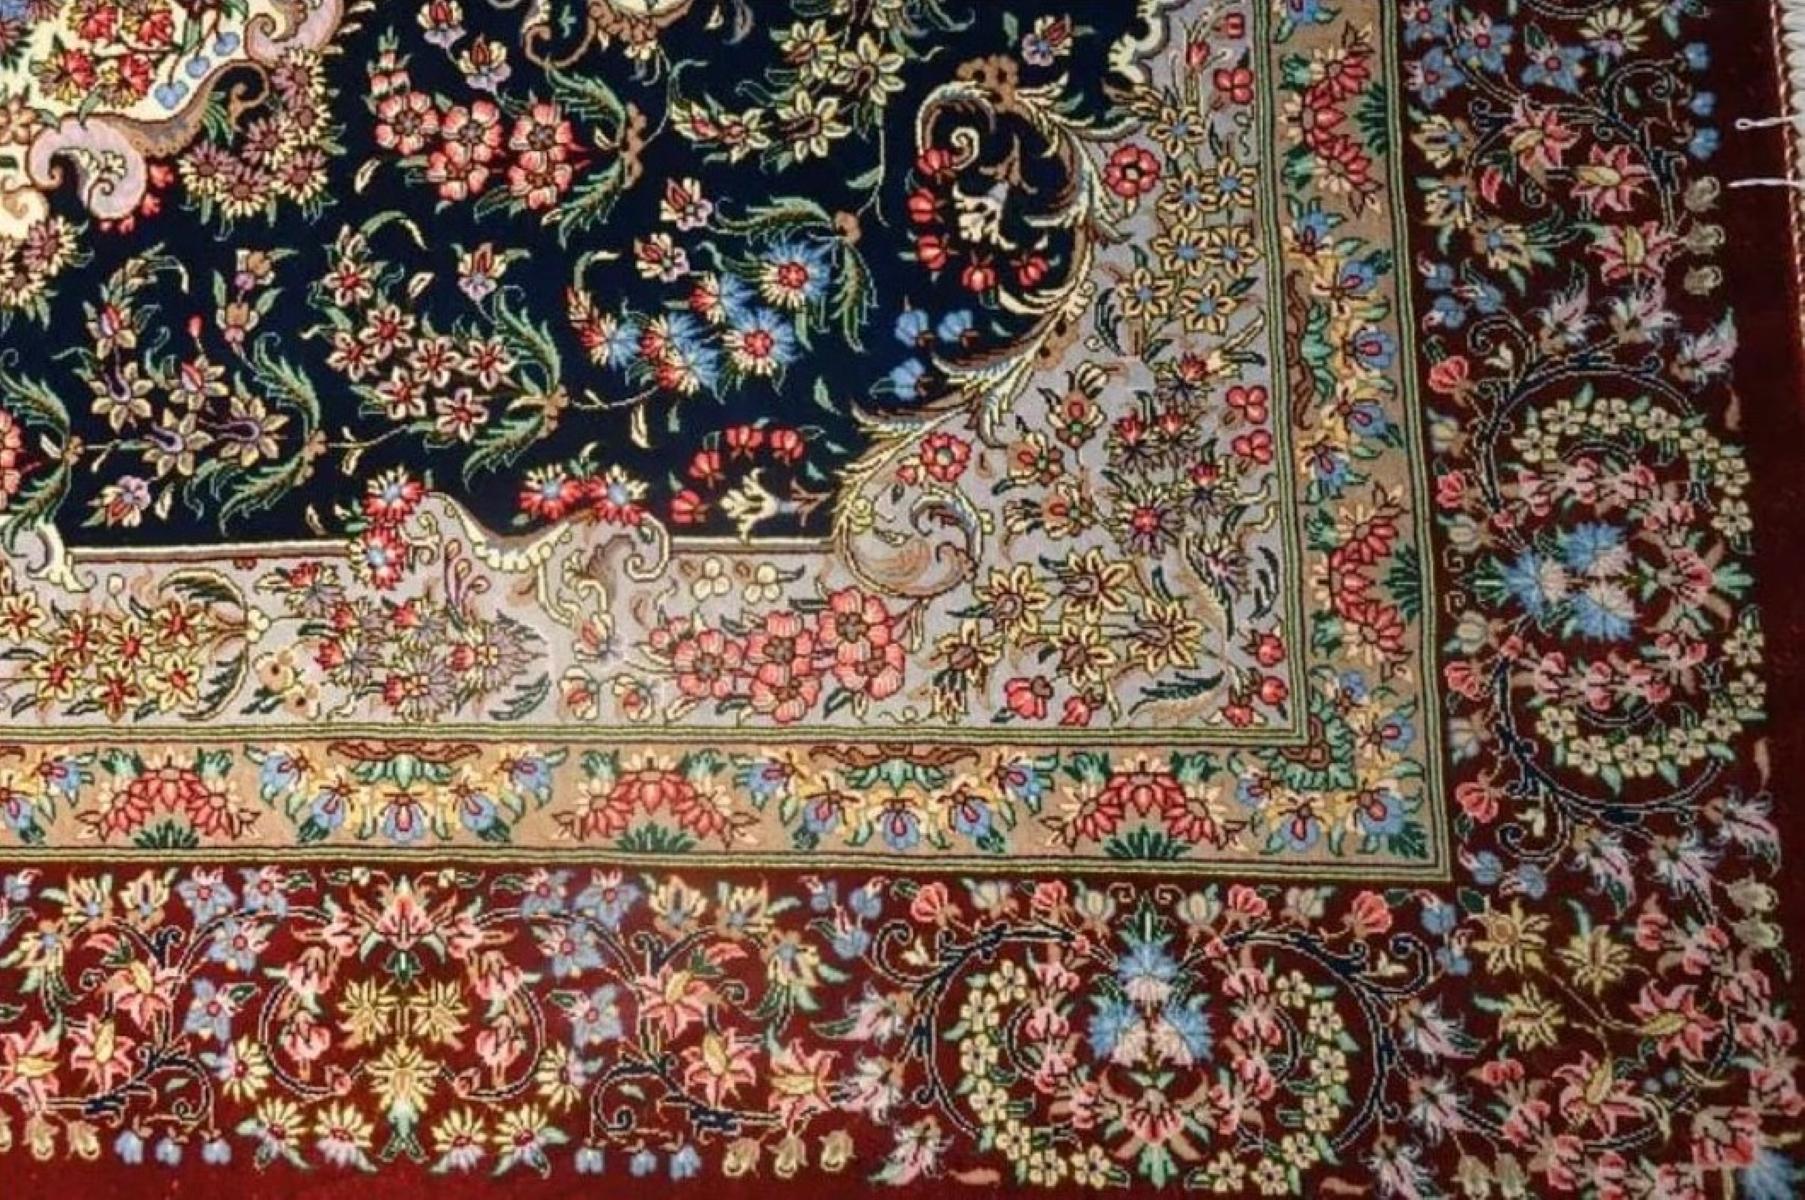 Sehr feine persische Teppich Qum 700 Knoten pro Zoll, Größe 4,9 x 3,1 Iran Qum Shafiee Seide und Seide Stiftung. Rund 1,500,000 Knoten, einer nach dem anderen von Hand geknüpft. Es dauert ein Jahr, bis dieses Kunstwerk fertiggestellt ist.